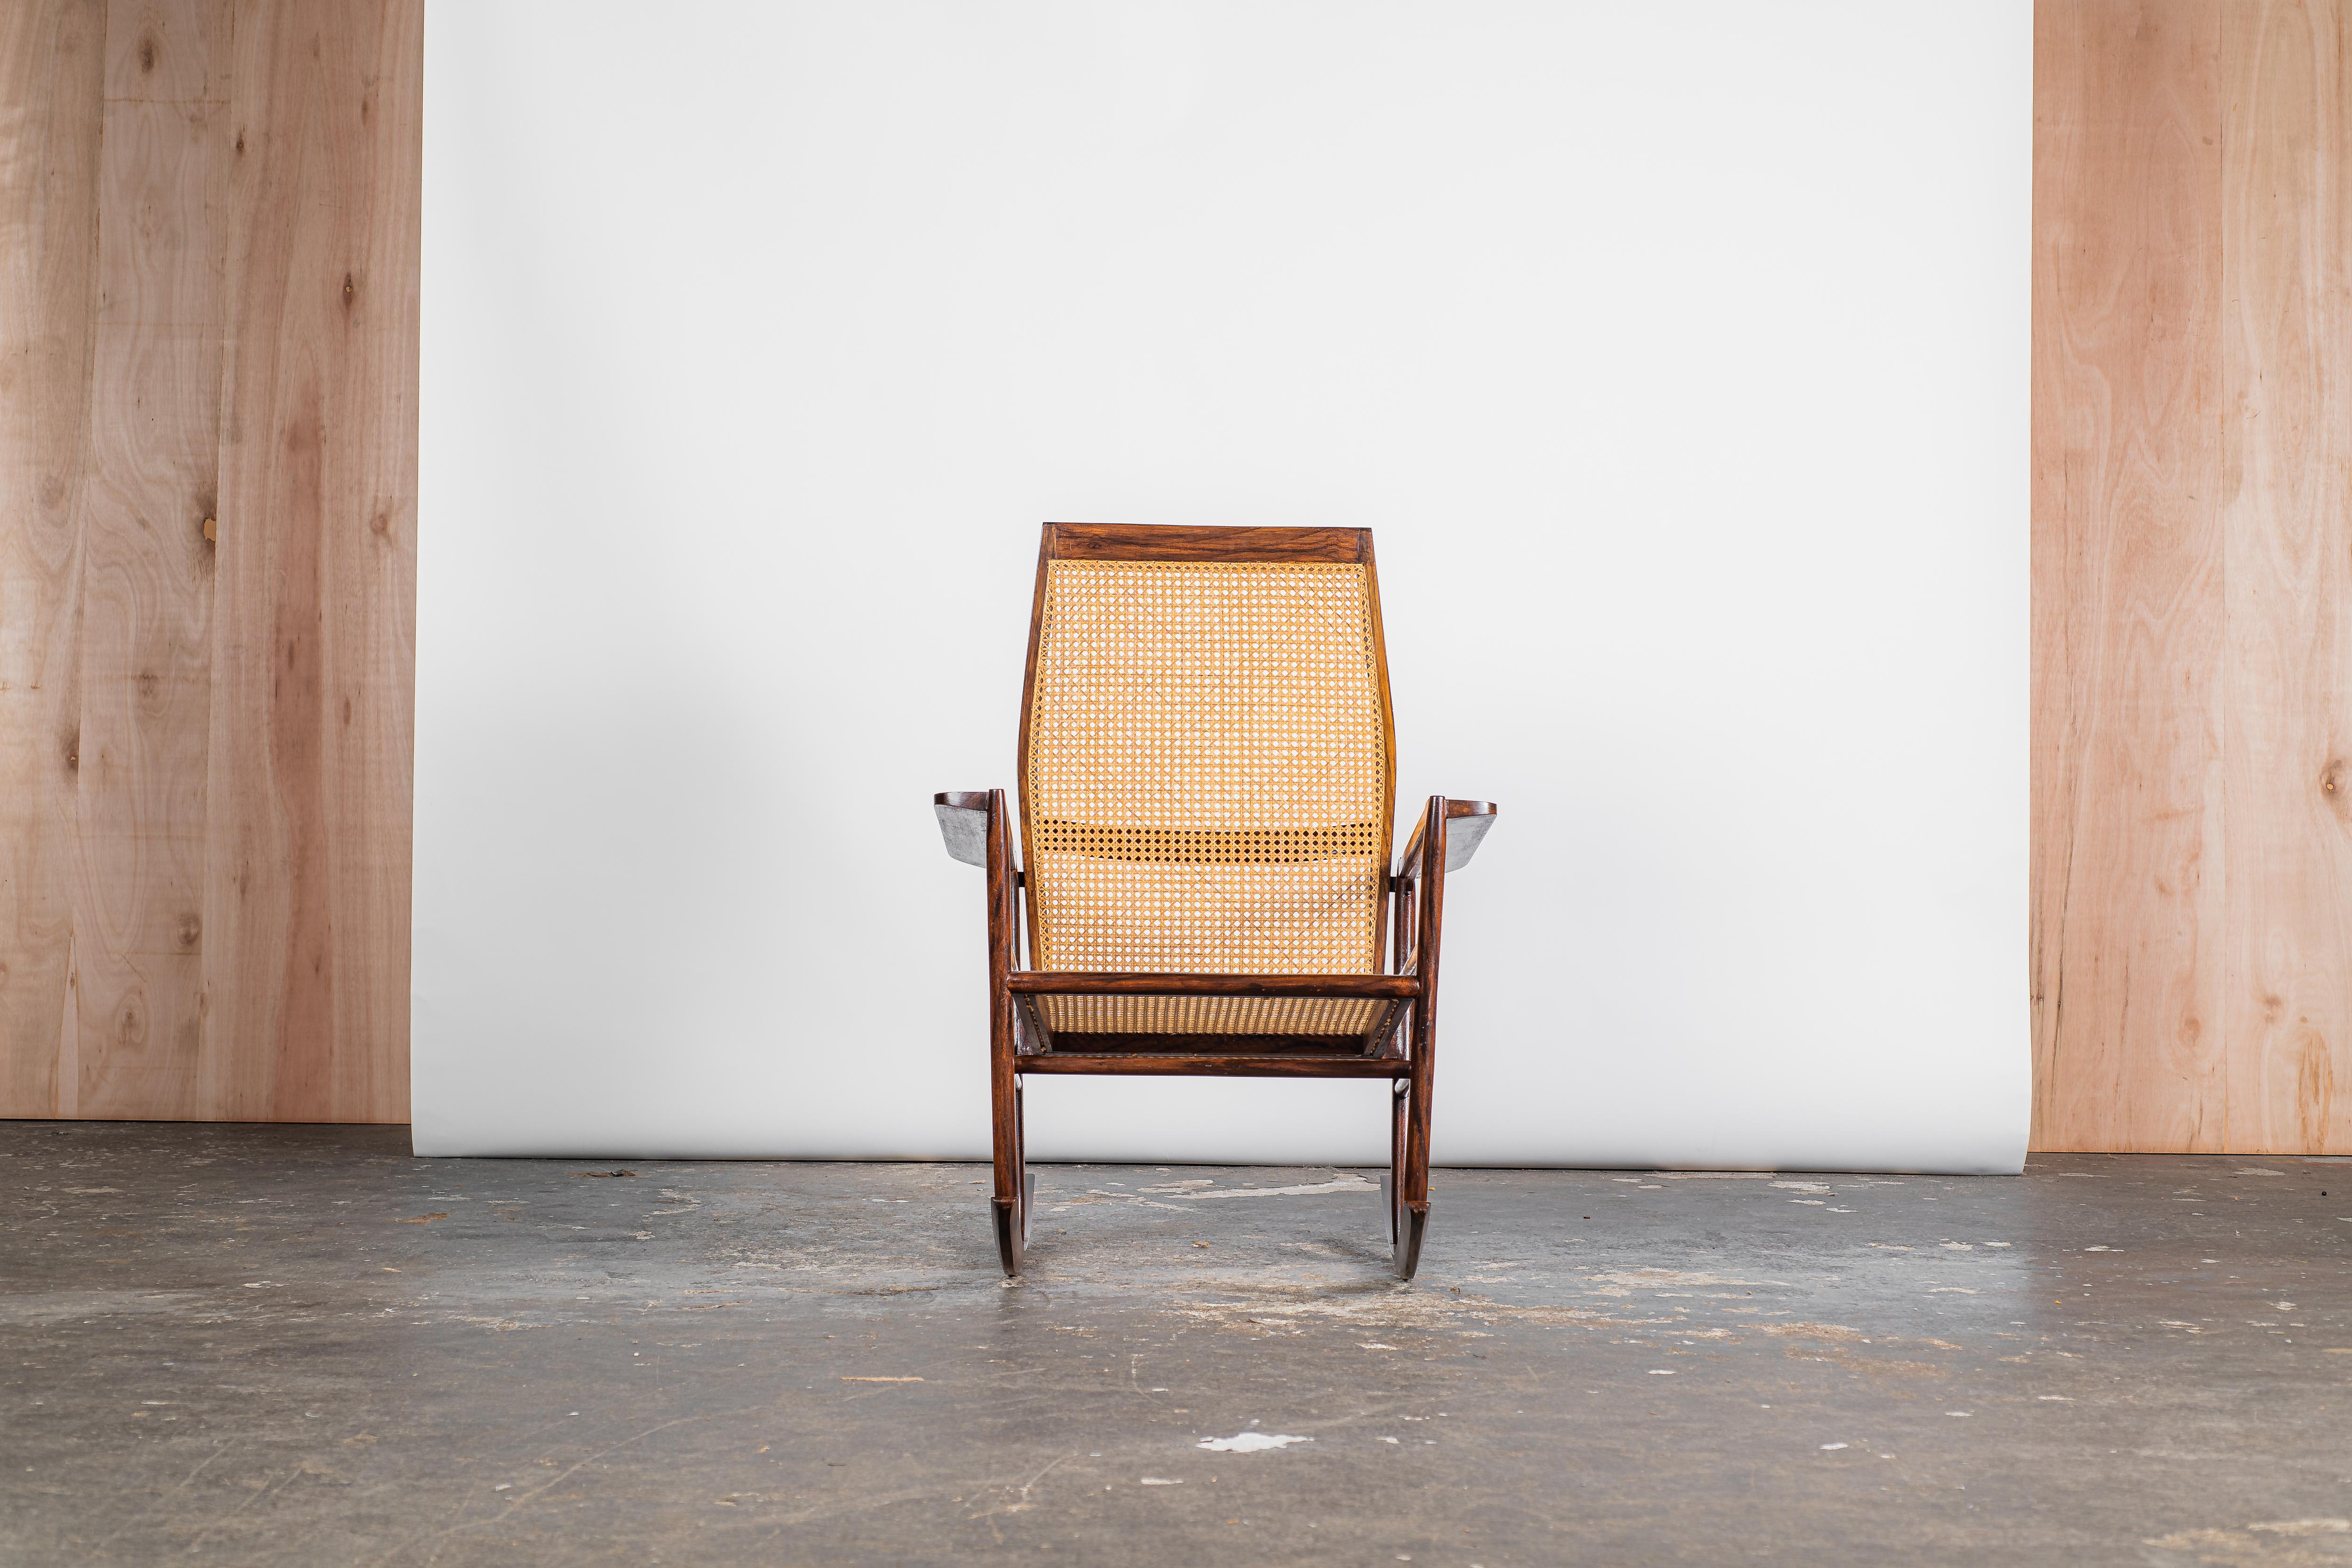 Issu du génie créatif de Joaquim Tenreiro, ce rocking-chair datant de 1947 est un témoignage exquis du design du milieu du XXe siècle. Composé d'un cadre en bois dur élégamment juxtaposé à une assise et un dossier en cannage, il s'impose comme un